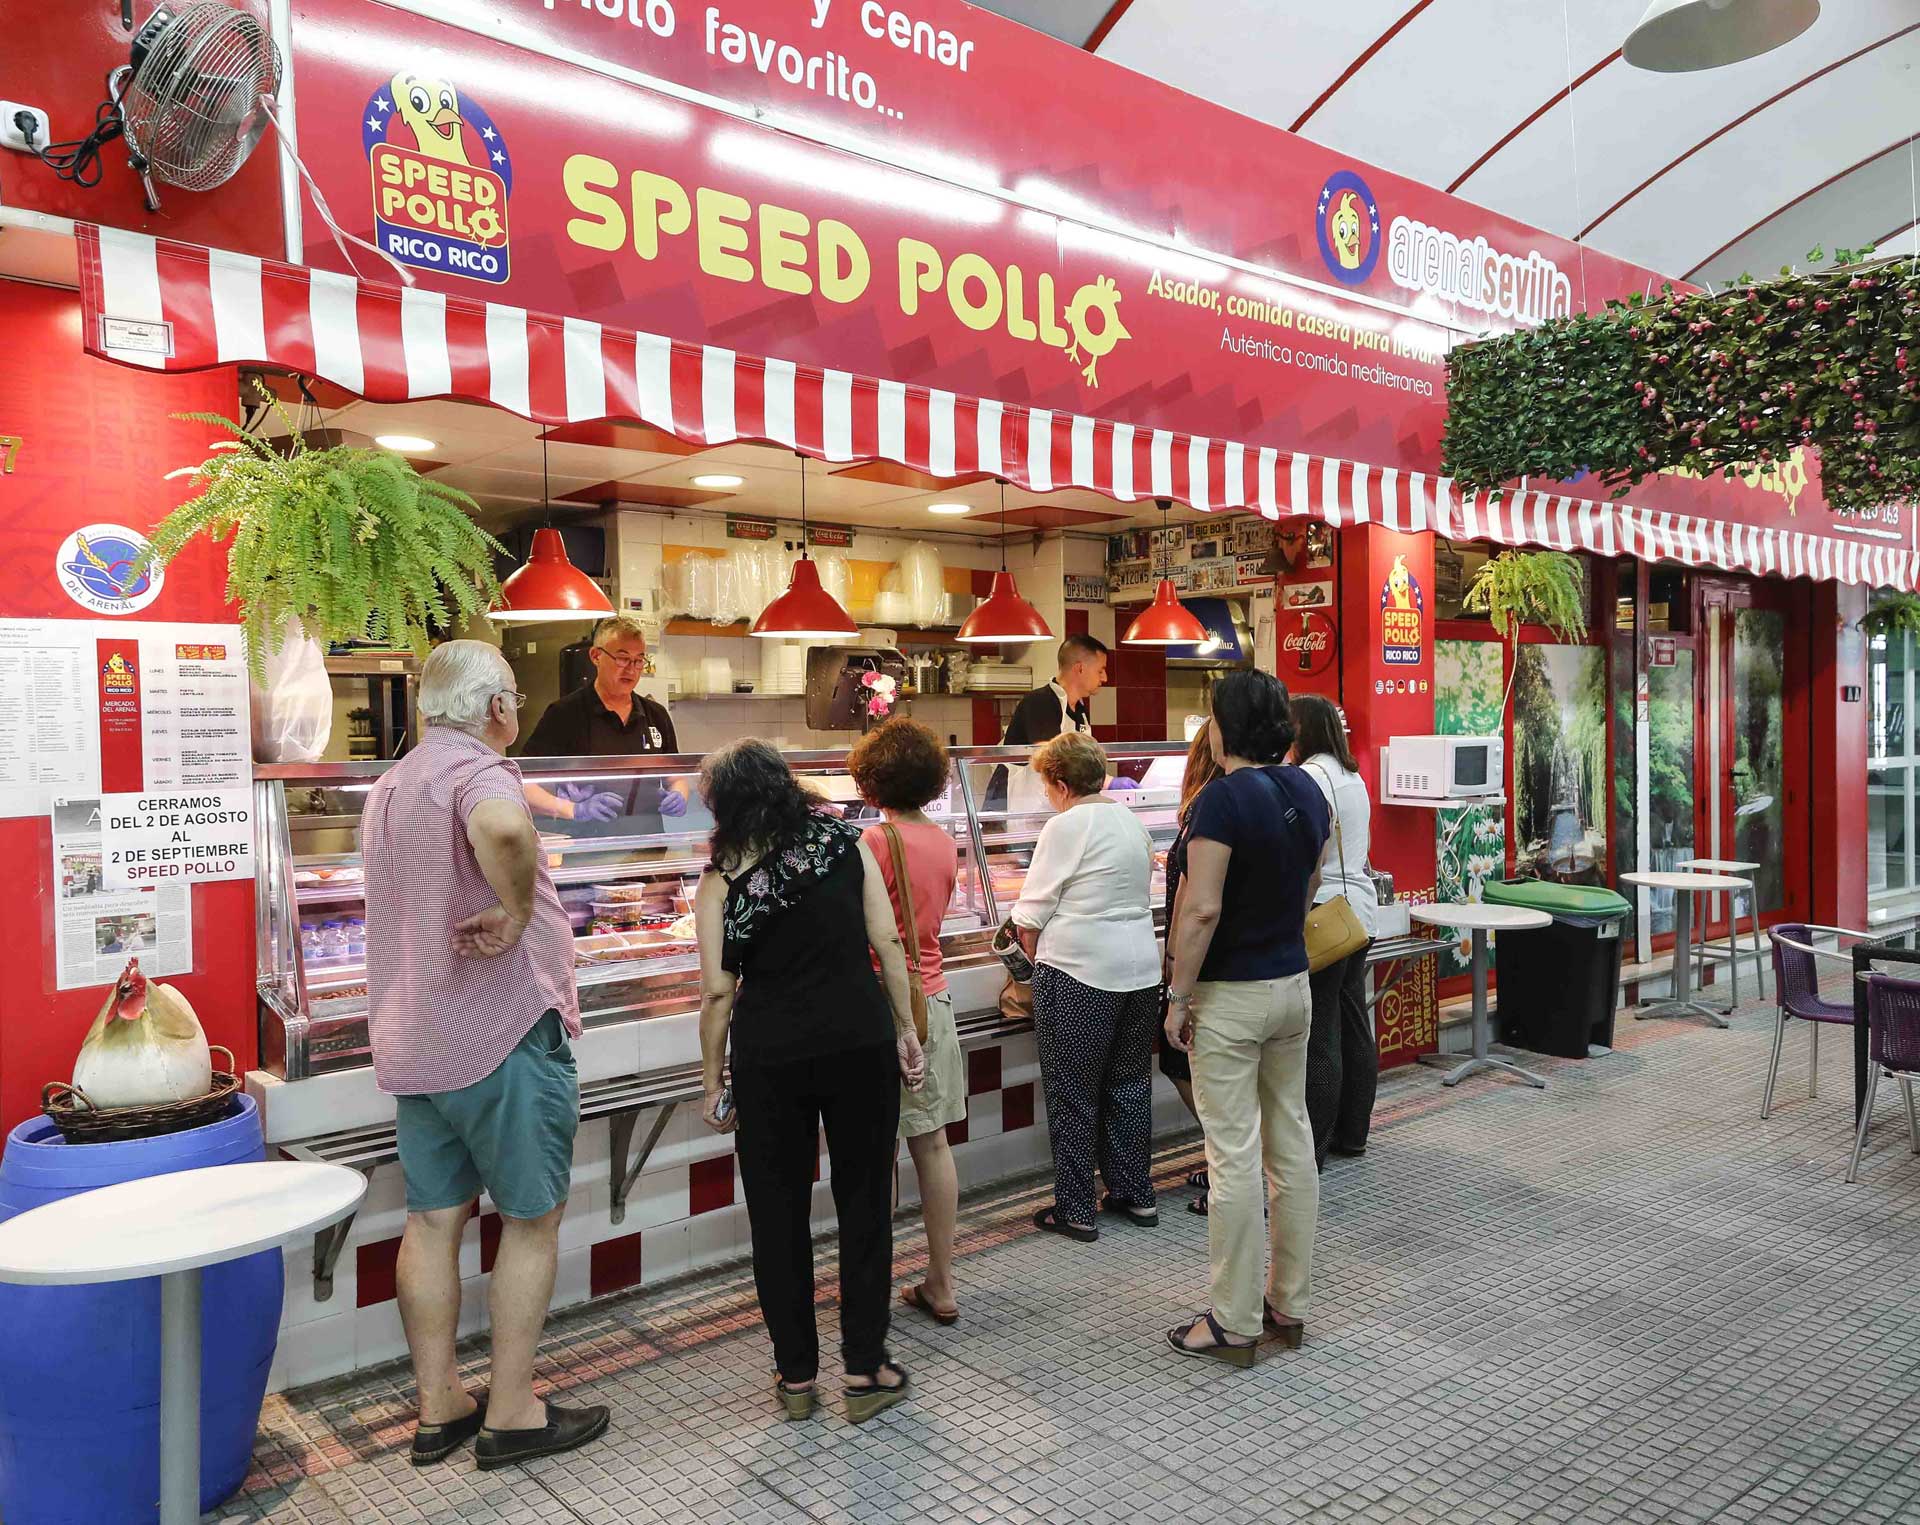 Tiendas de comida preparada en Sevilla